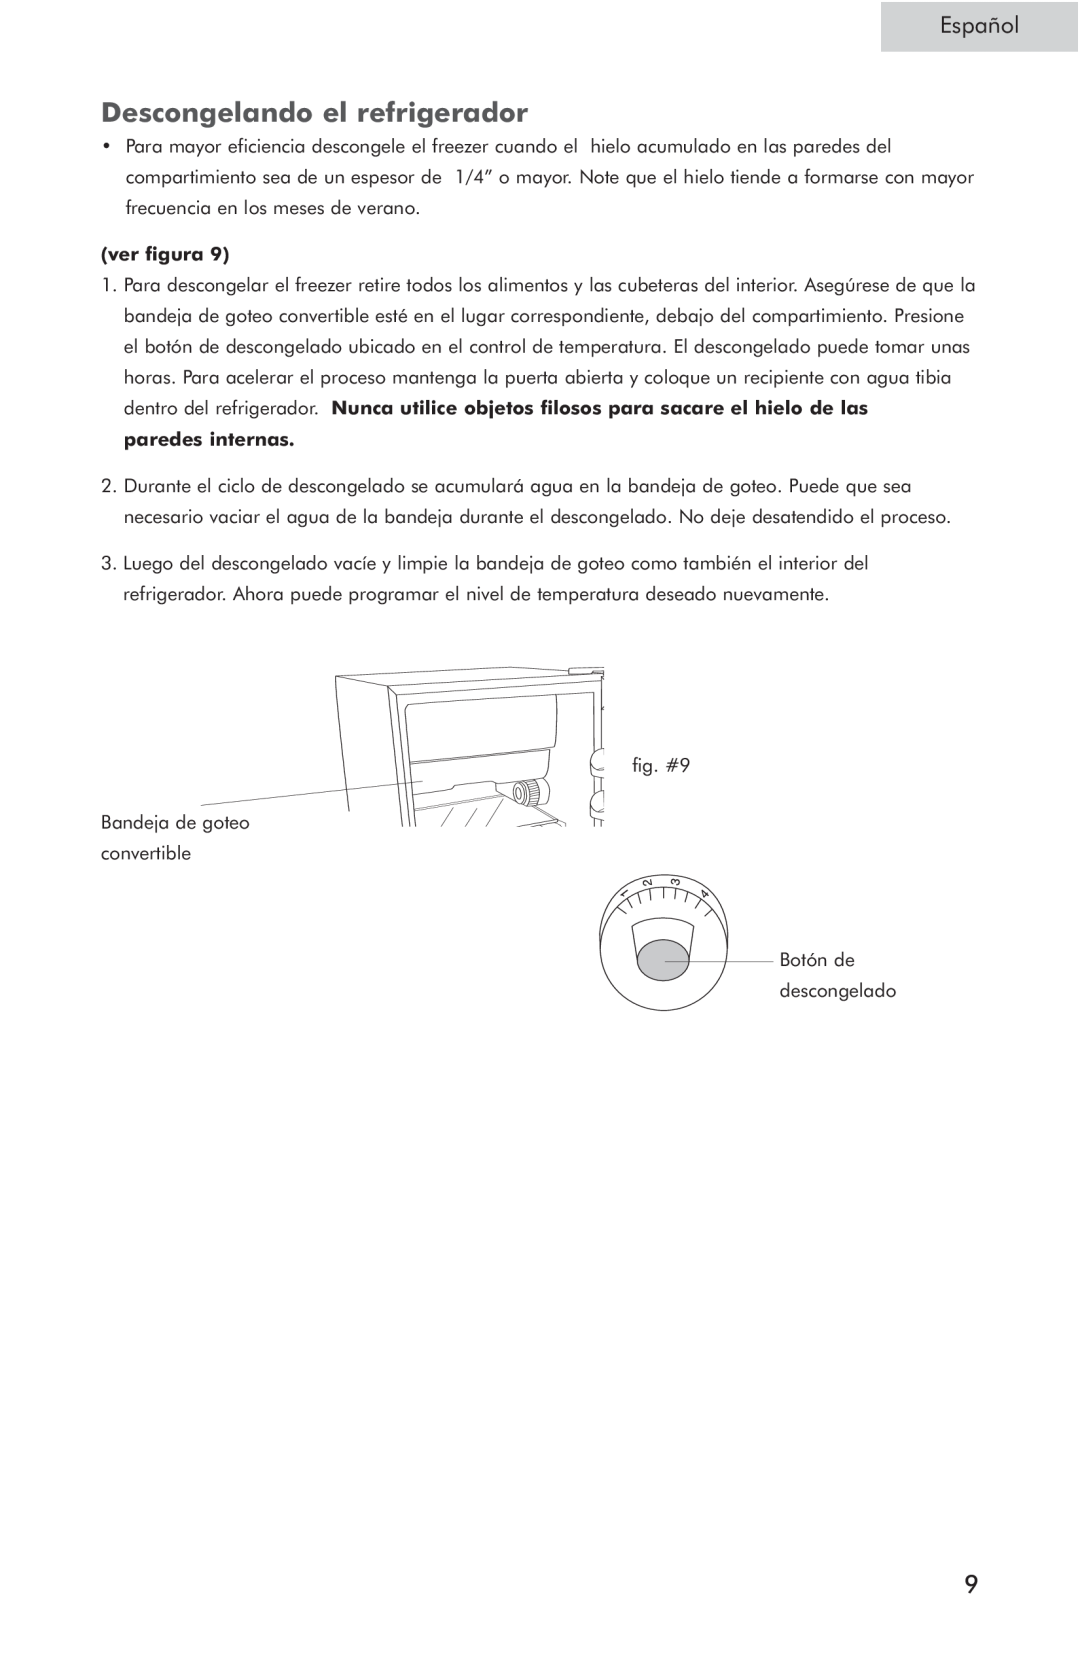 Haier HSQ05WNC user manual Descongelando el refrigerador, Español, ver figura 